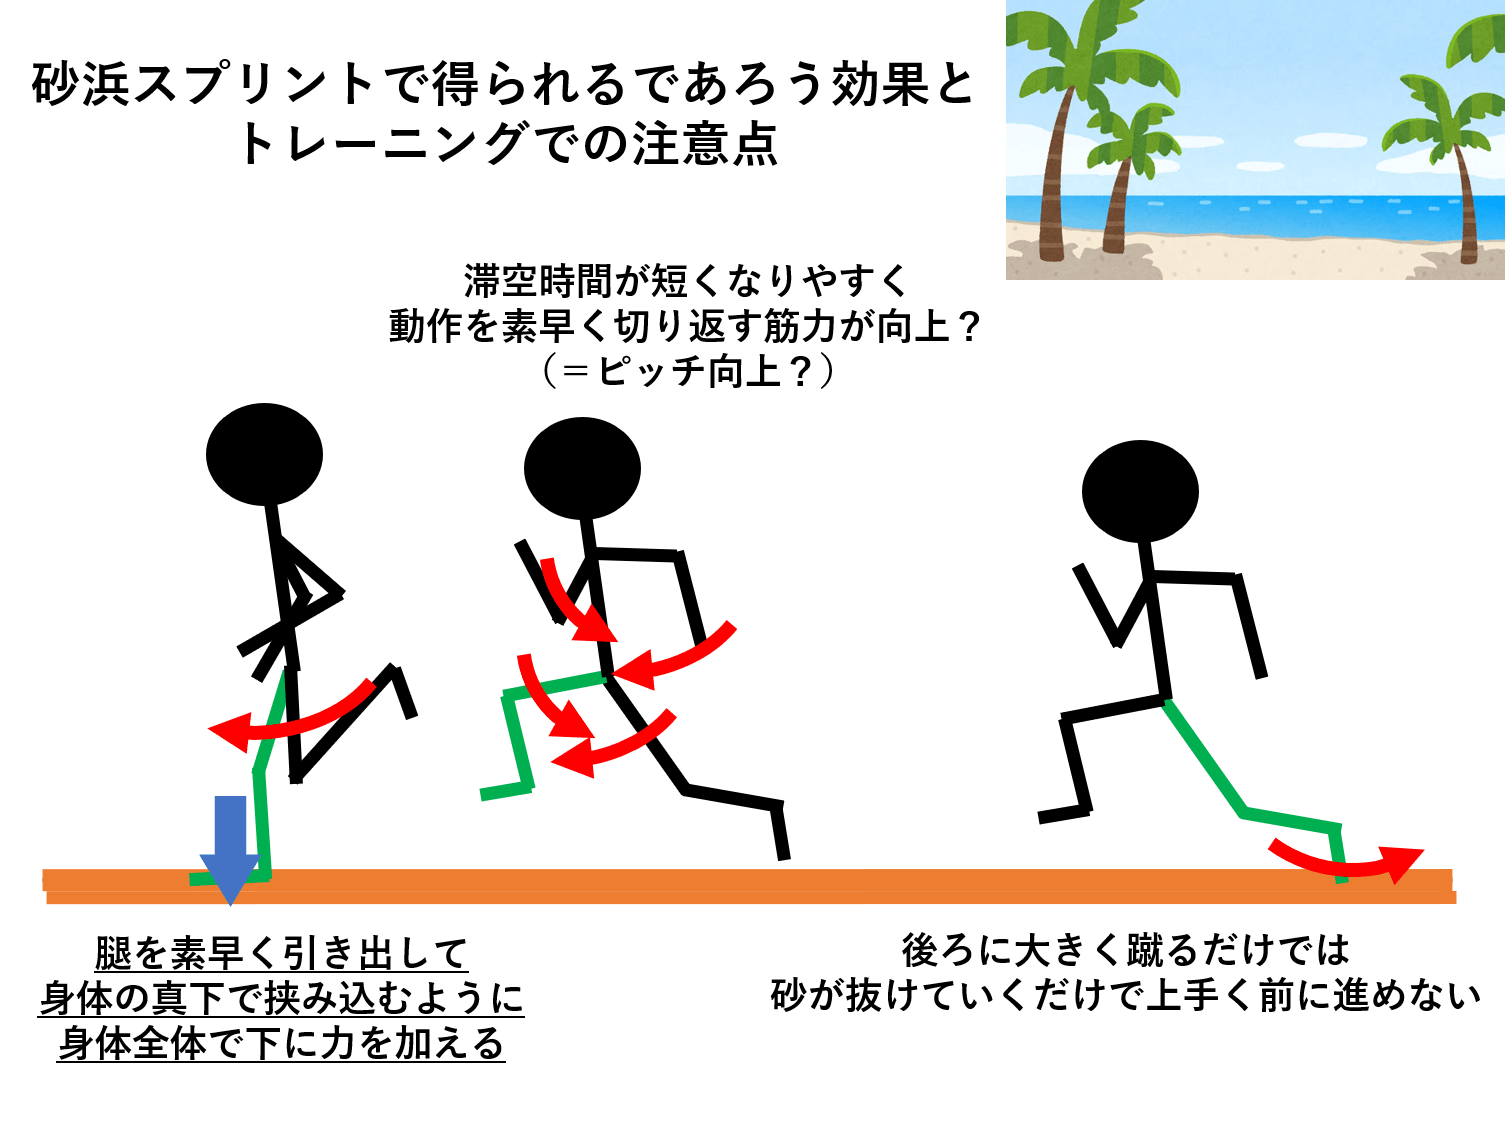 砂浜スプリントトレーニングで得られる効果と走りのコツ 陸上競技の理論と実践 Sprint Conditioning